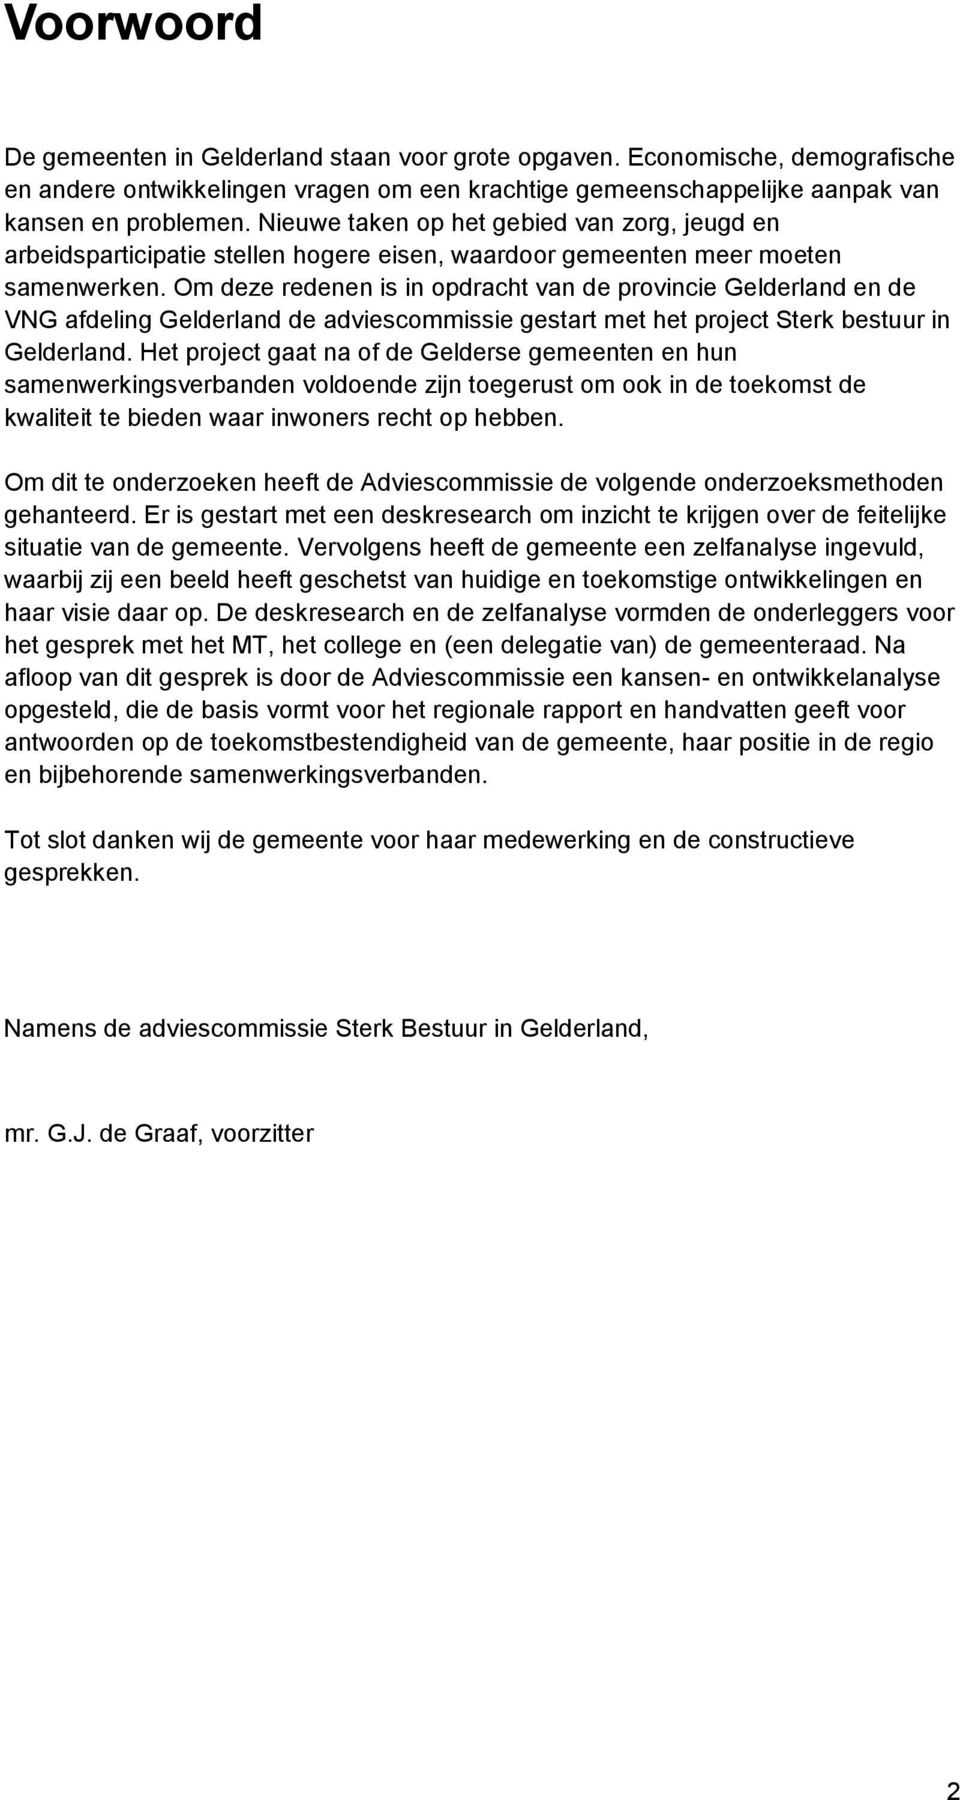 Om deze redenen is in opdracht van de provincie Gelderland en de VNG afdeling Gelderland de adviescommissie gestart met het project Sterk bestuur in Gelderland.